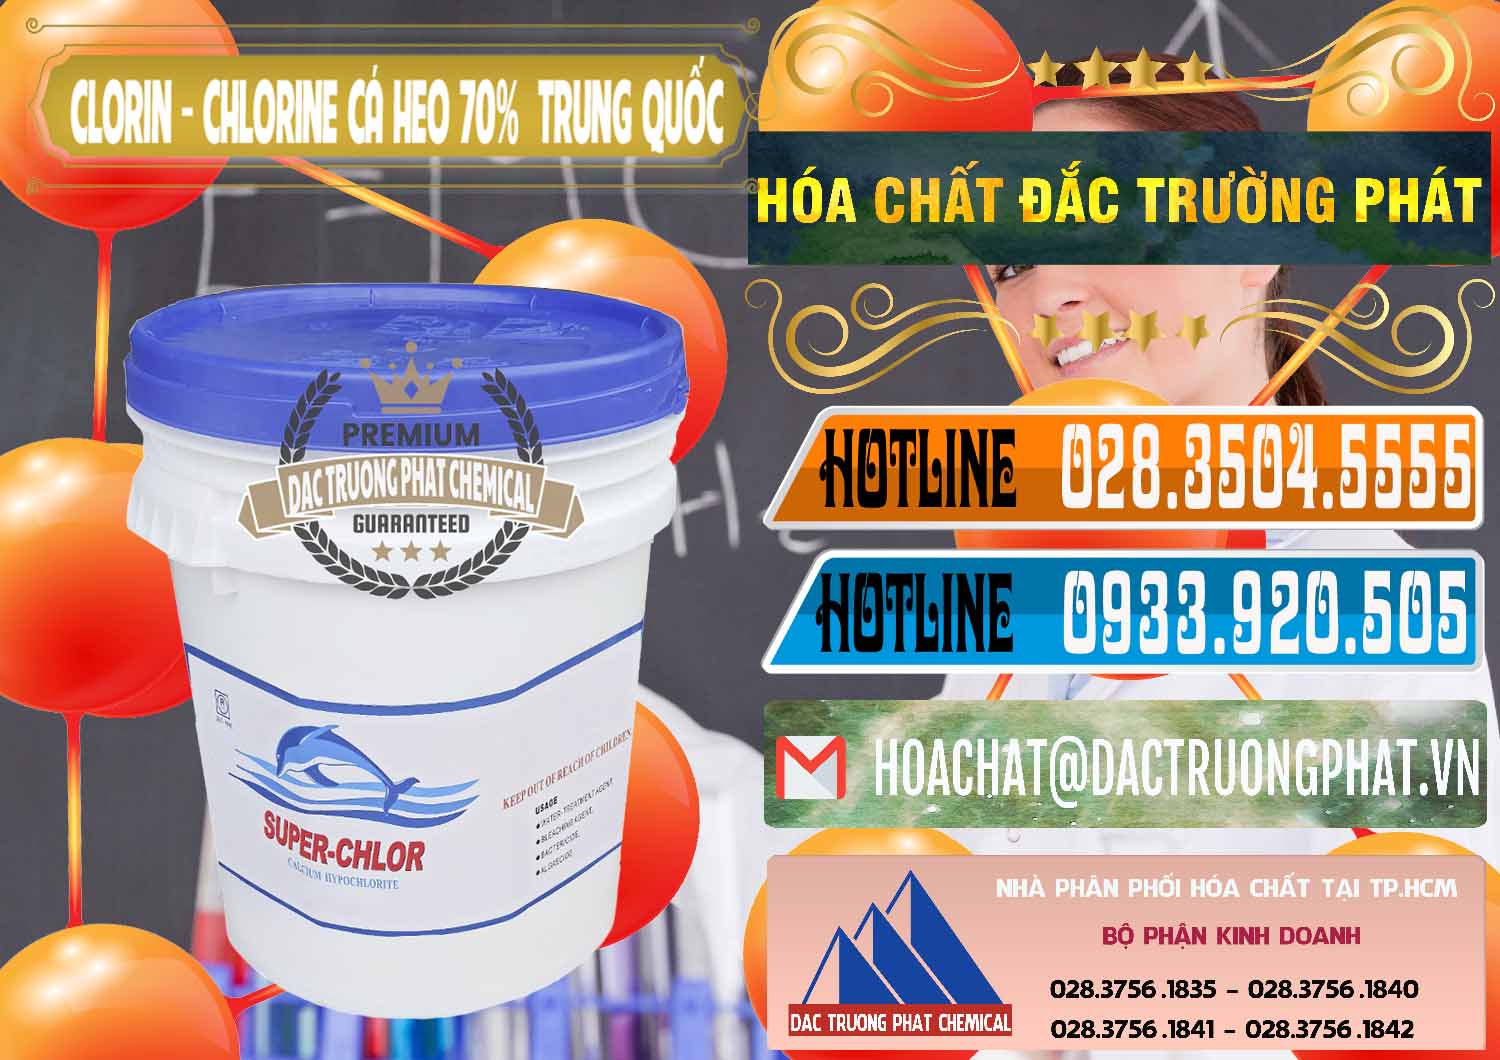 Nơi kinh doanh ( bán ) Clorin - Chlorine Cá Heo 70% Super Chlor Nắp Xanh Trung Quốc China - 0209 - Công ty chuyên cung cấp & kinh doanh hóa chất tại TP.HCM - stmp.net